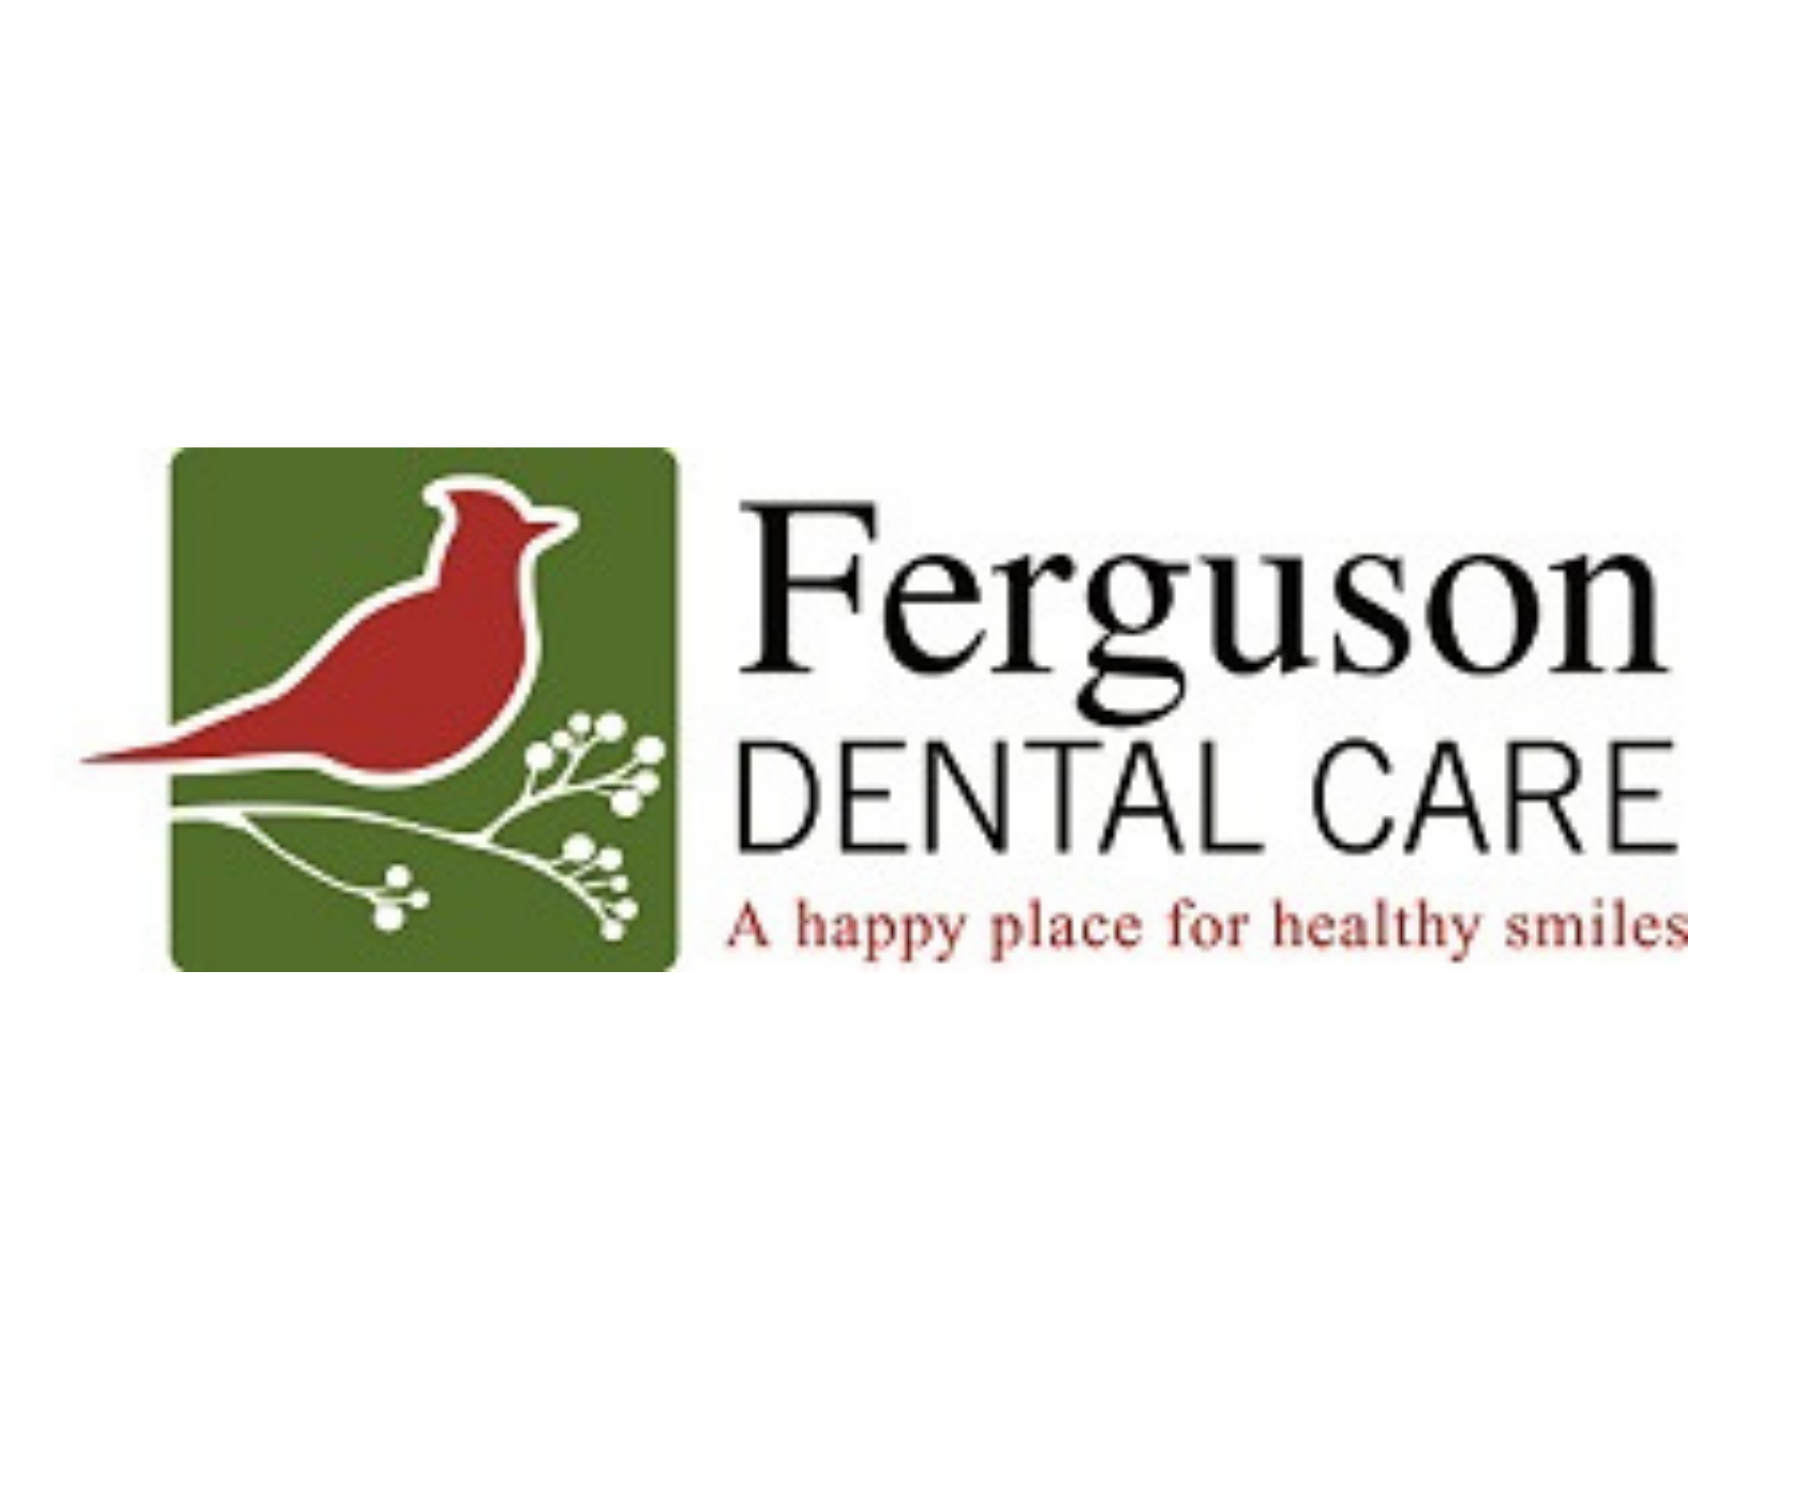 Ferguson Dental Care